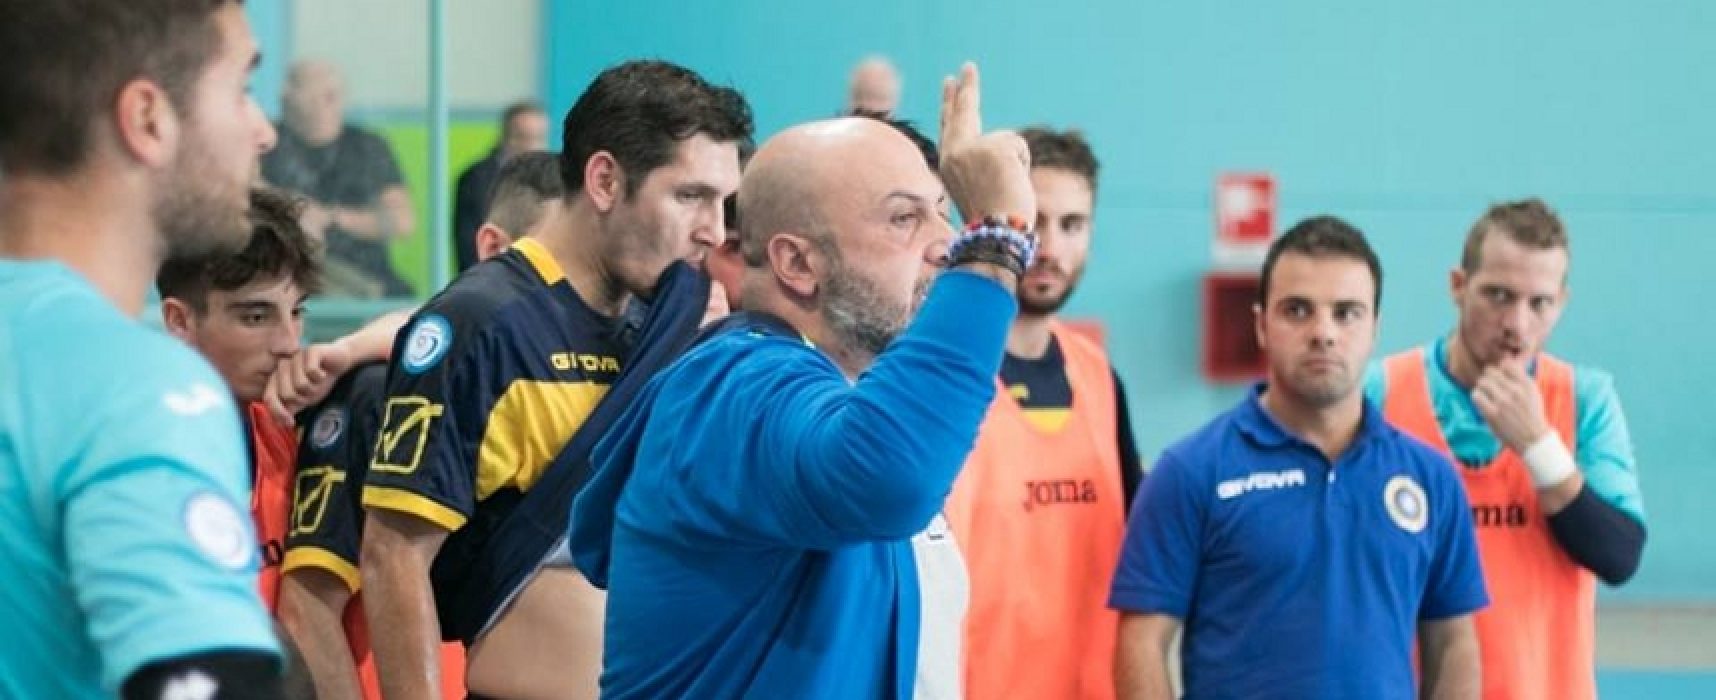 Futsal Bisceglie chiamato al riscatto nella tana del Sammichele